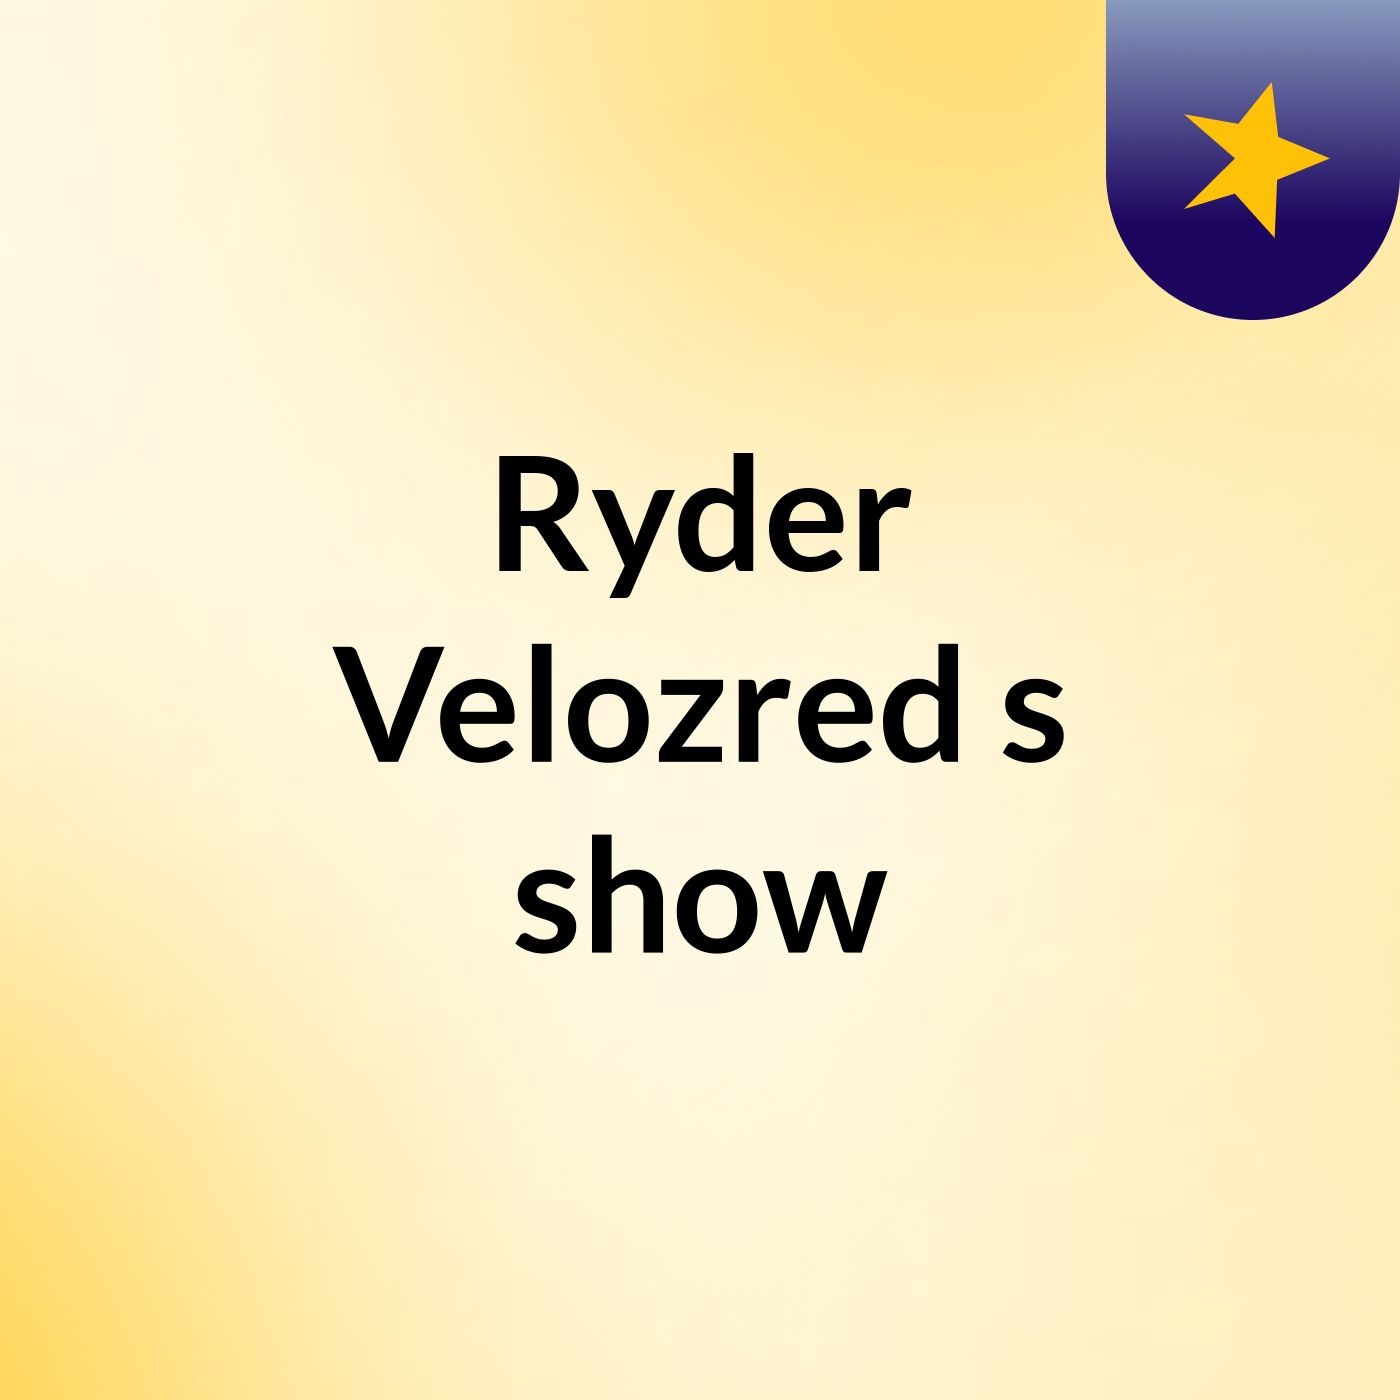 Ryder Velozred's show